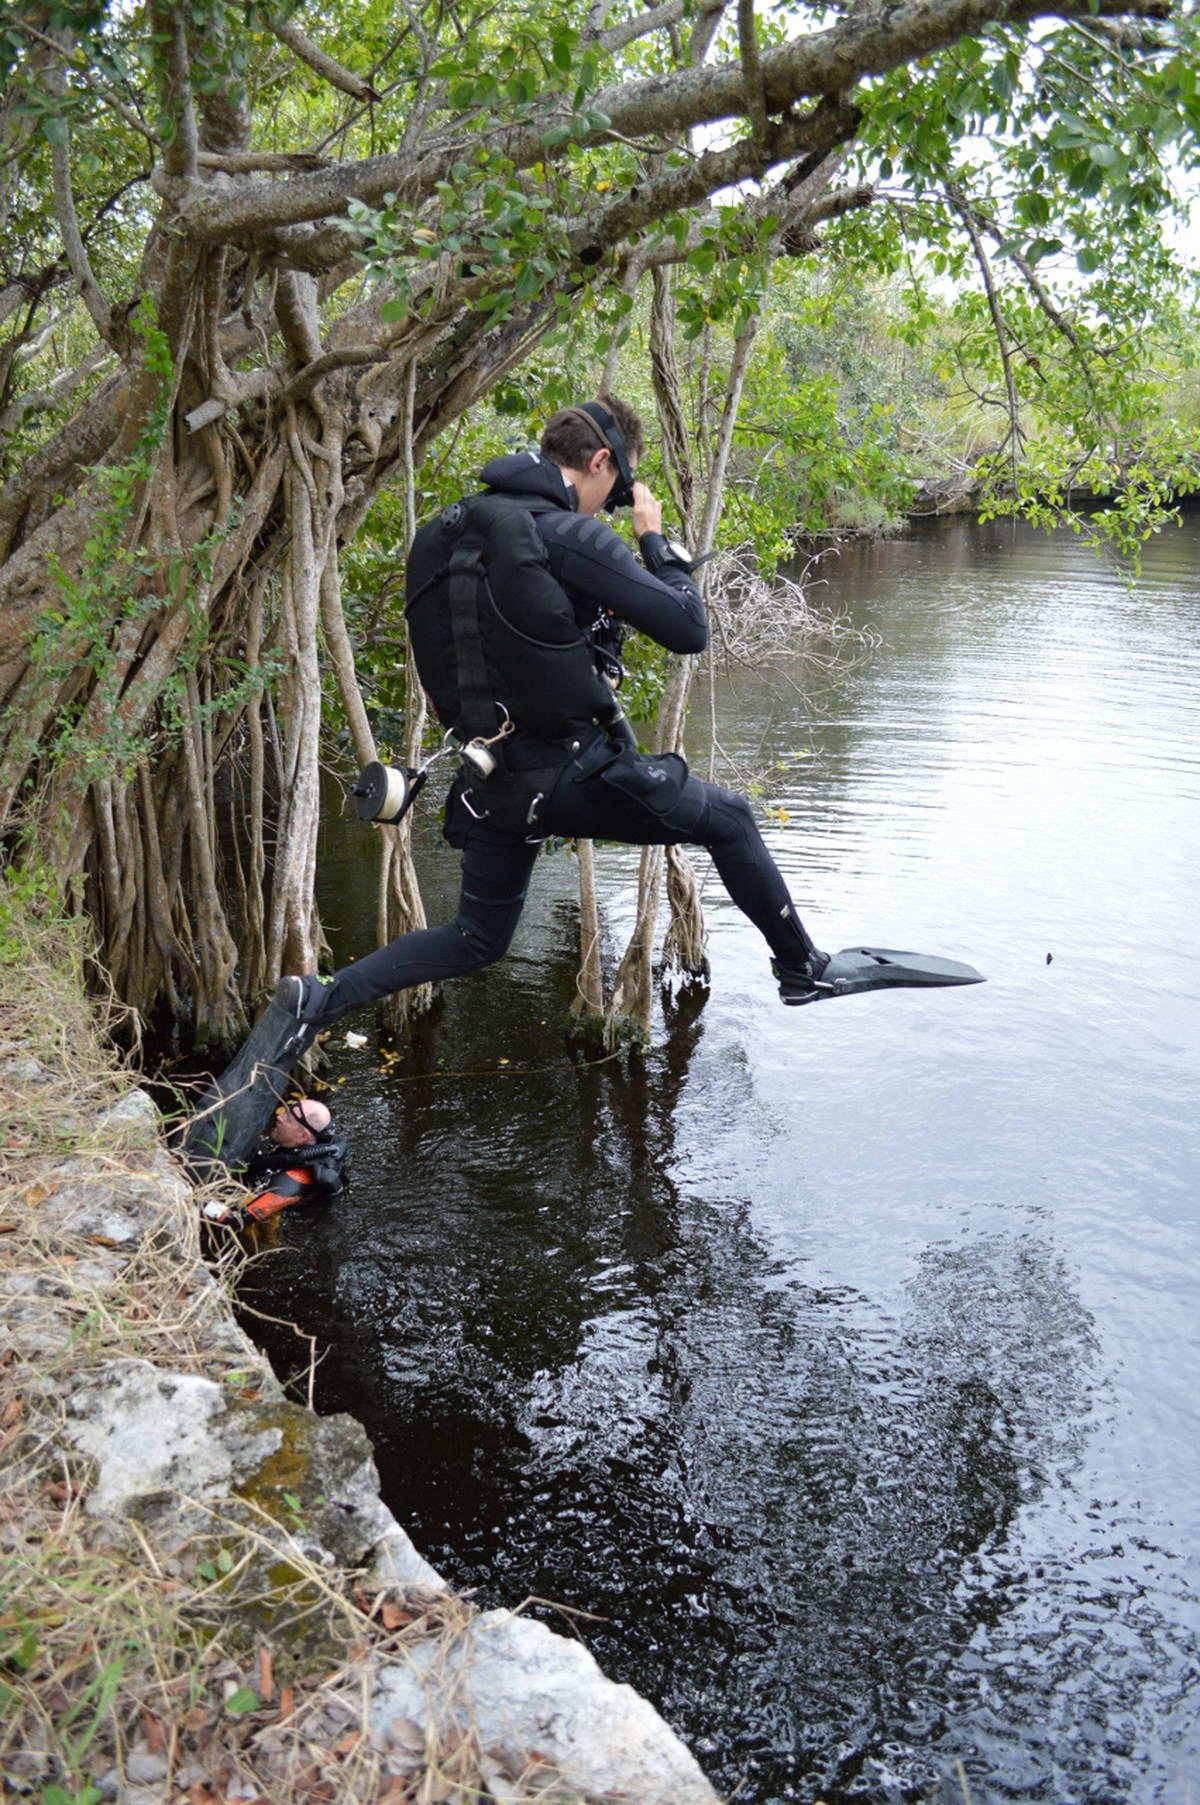 Divers (David Brankovits and Tom Iliffe) entering a cenote in the Yucatan Peninsula
(c) Sergio Benitez